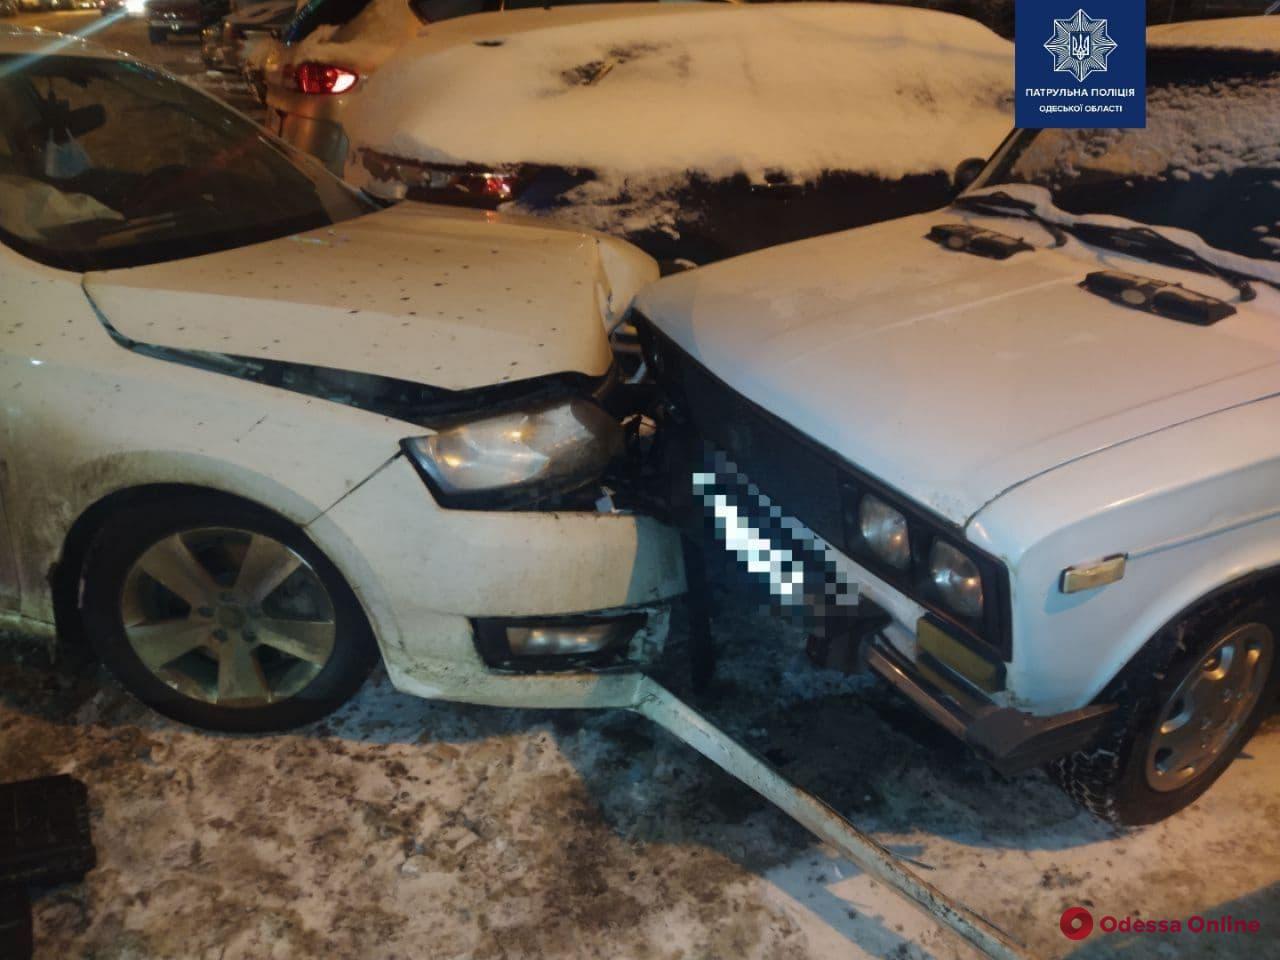 Разбиты семь авто: на поселке Котовского из-за пьяного водителя за рулем Mitsubishi произошло масштабное ДТП